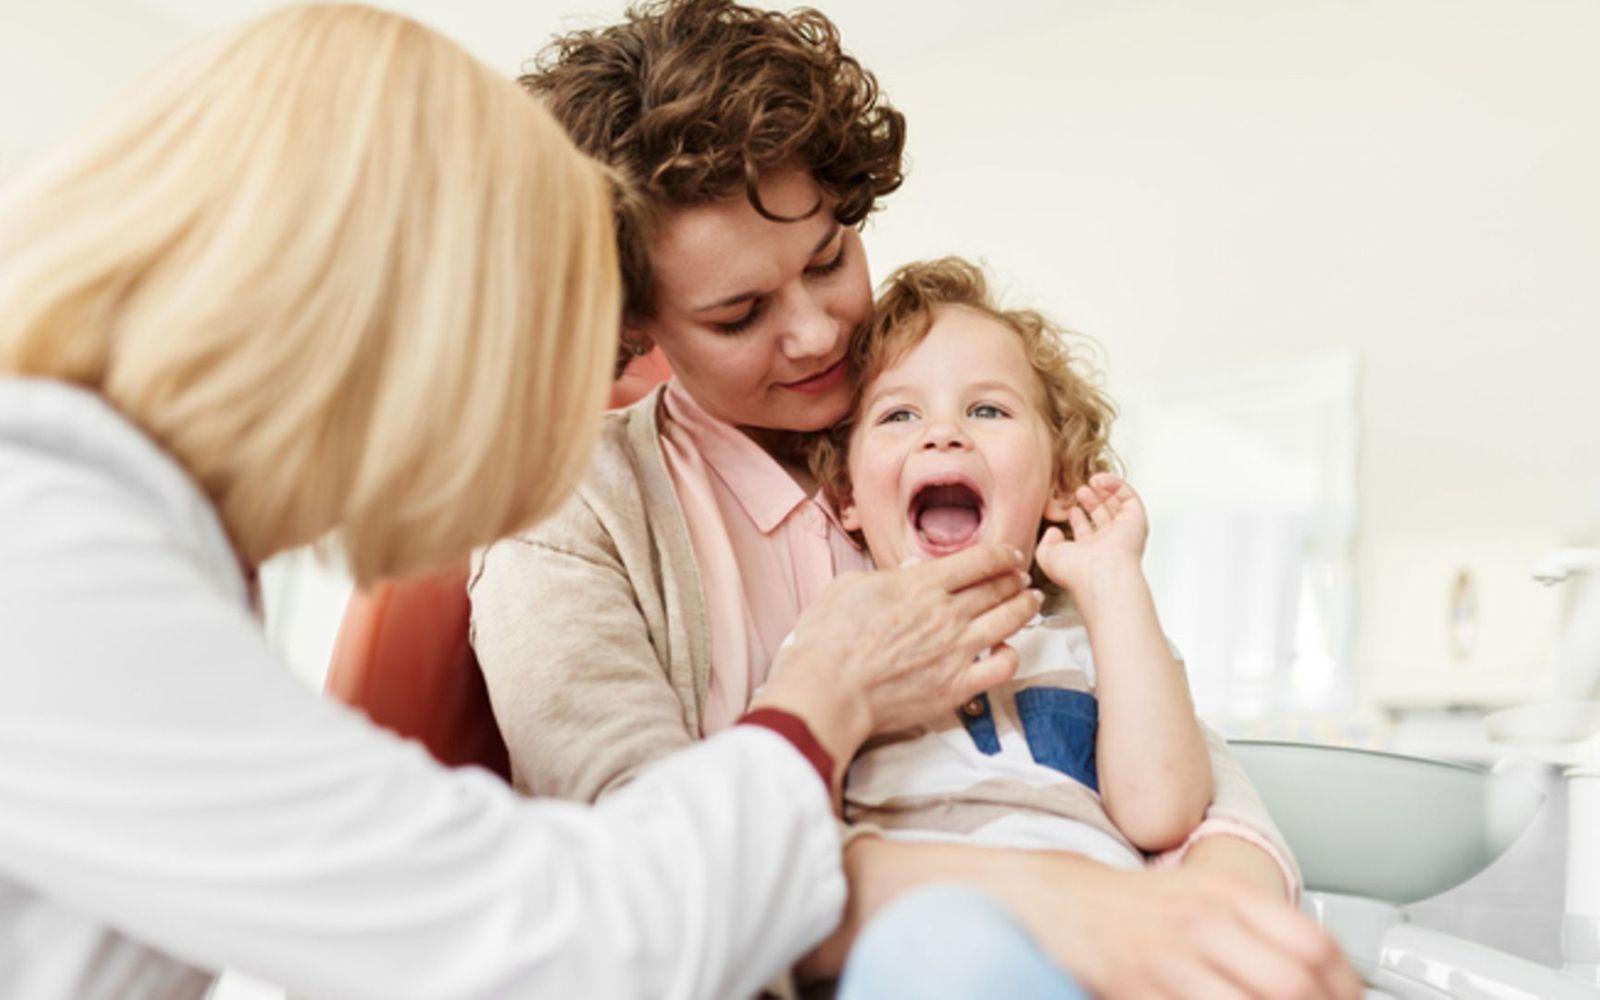 Symbolbild für Angst vorm Zahnarzt: Eine Mutter hat ihr Kind auf den Schoß und die Zahnärztin schaut in den Mund des Kindes